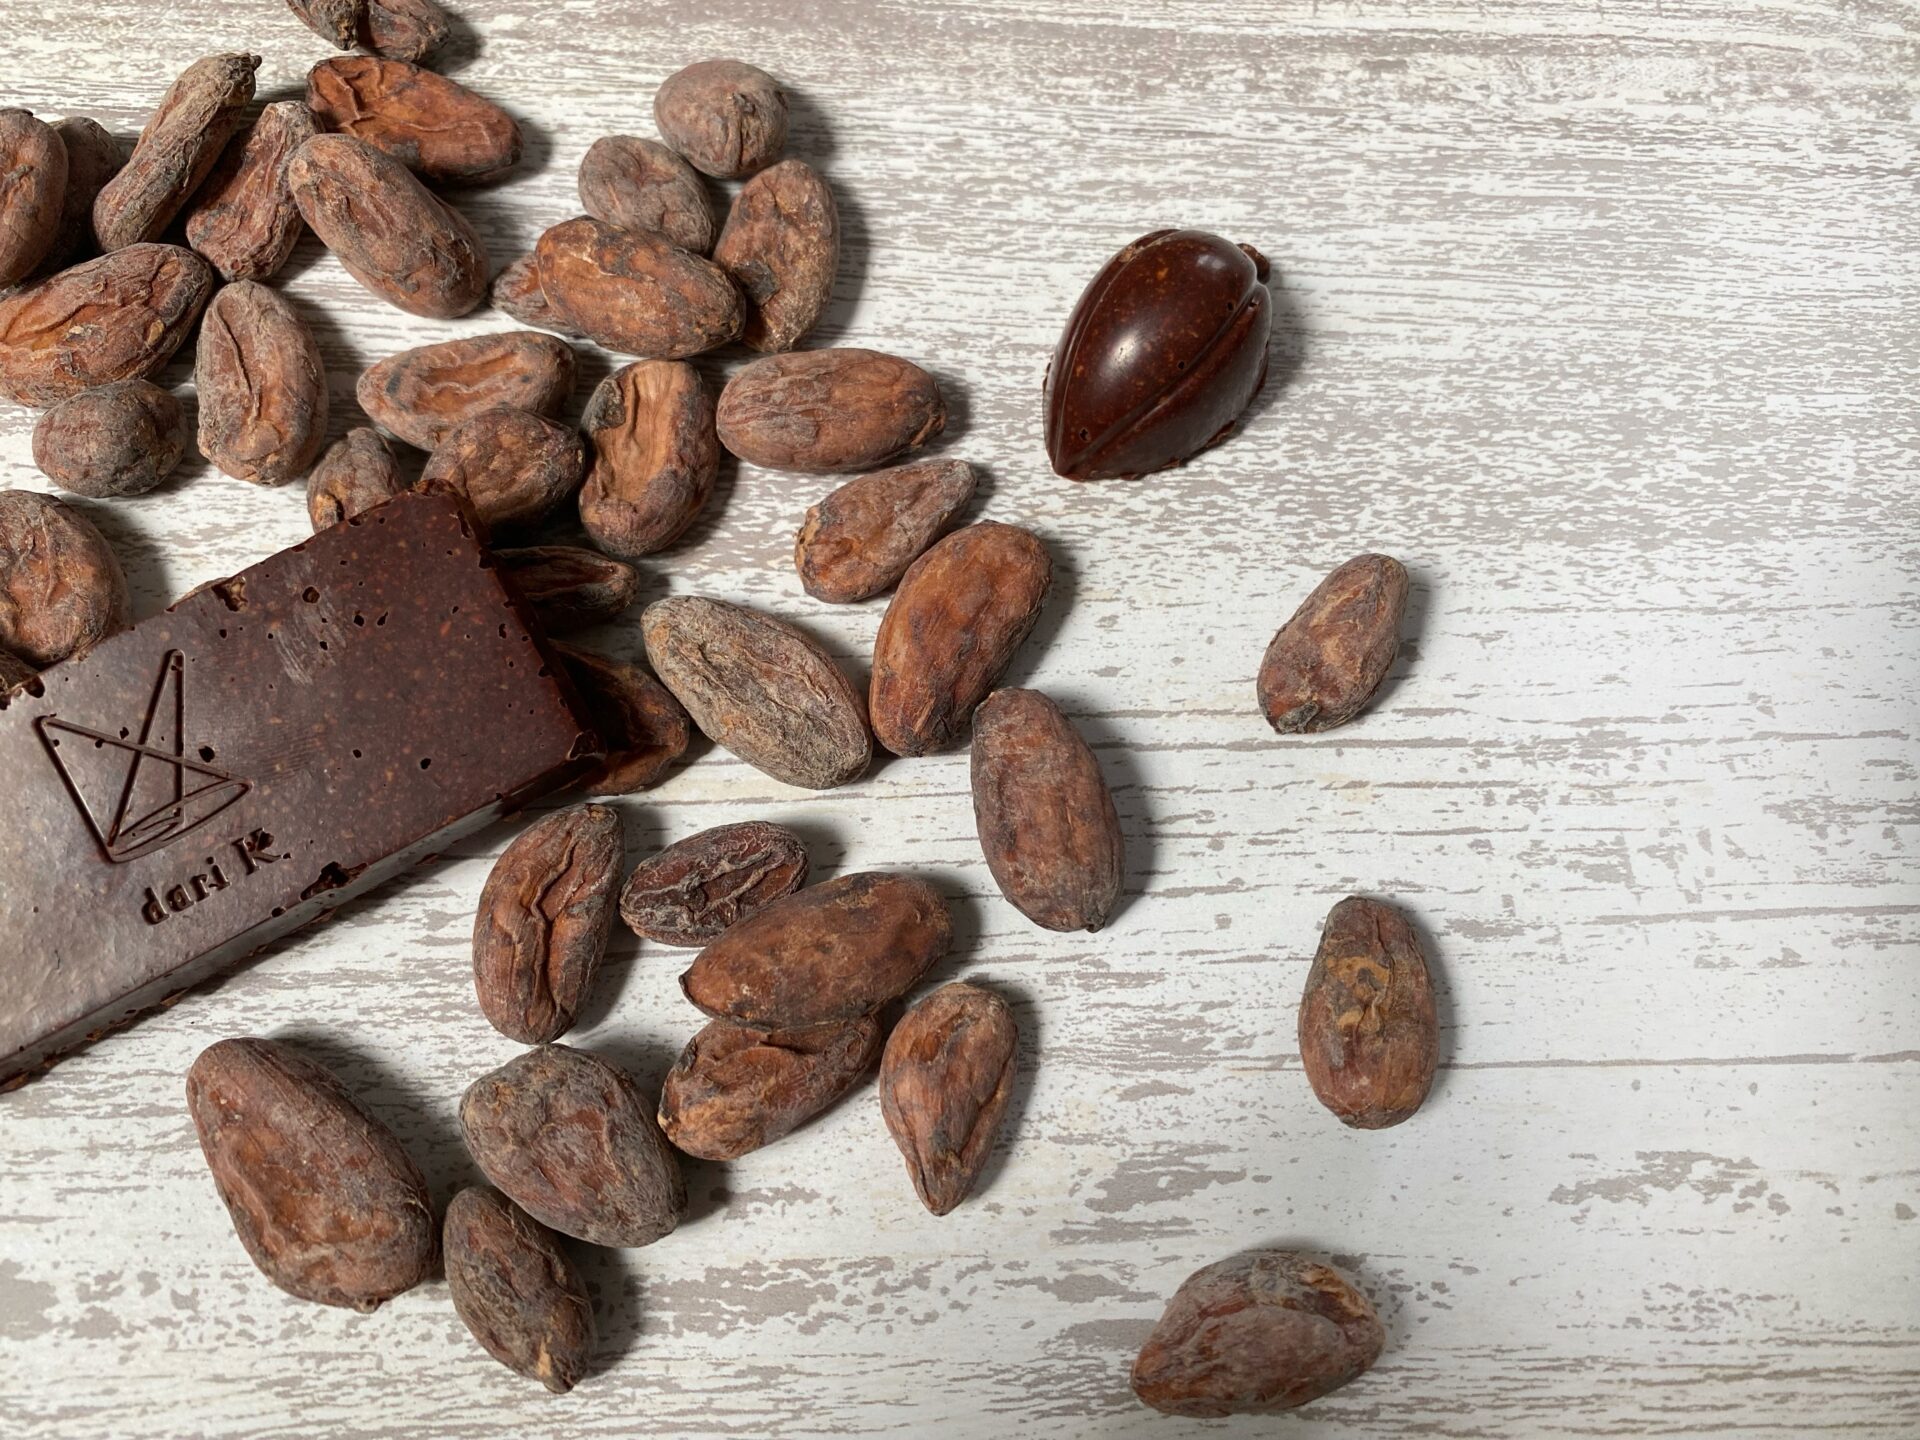 カカオ豆と、カカオ豆からつくったチョコレートの写真